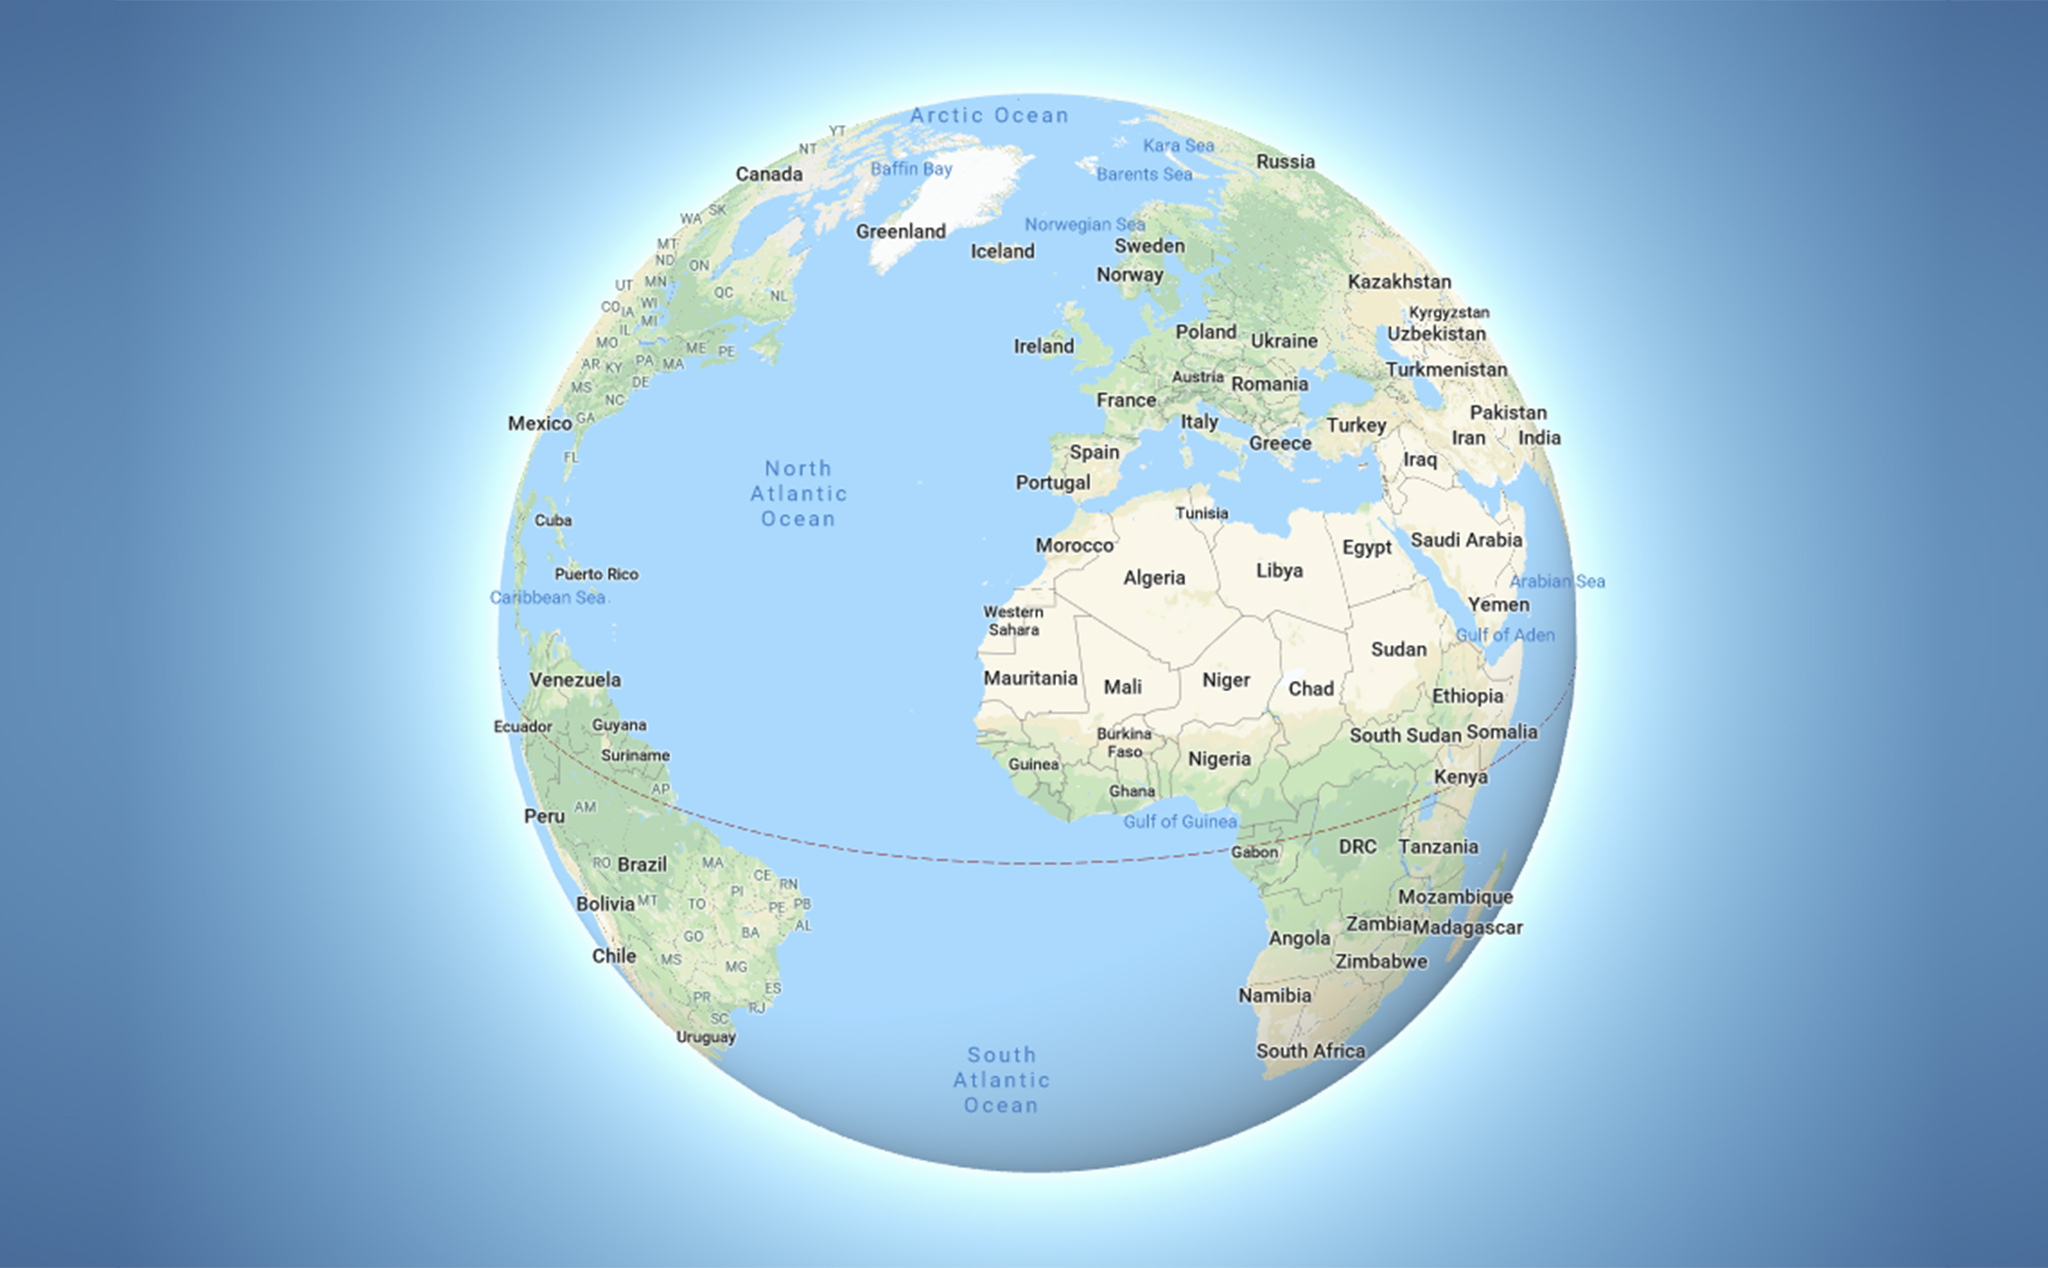 Google Maps tiếp tục thúc đẩy trải nghiệm người dùng với chế độ 3D Globe mới nhất trên desktop. Khám phá thế giới bằng cách xoay và phóng to bản đồ, bạn sẽ có một cái nhìn toàn diện về địa lý, thông tin về thời tiết và các địa điểm nổi tiếng.